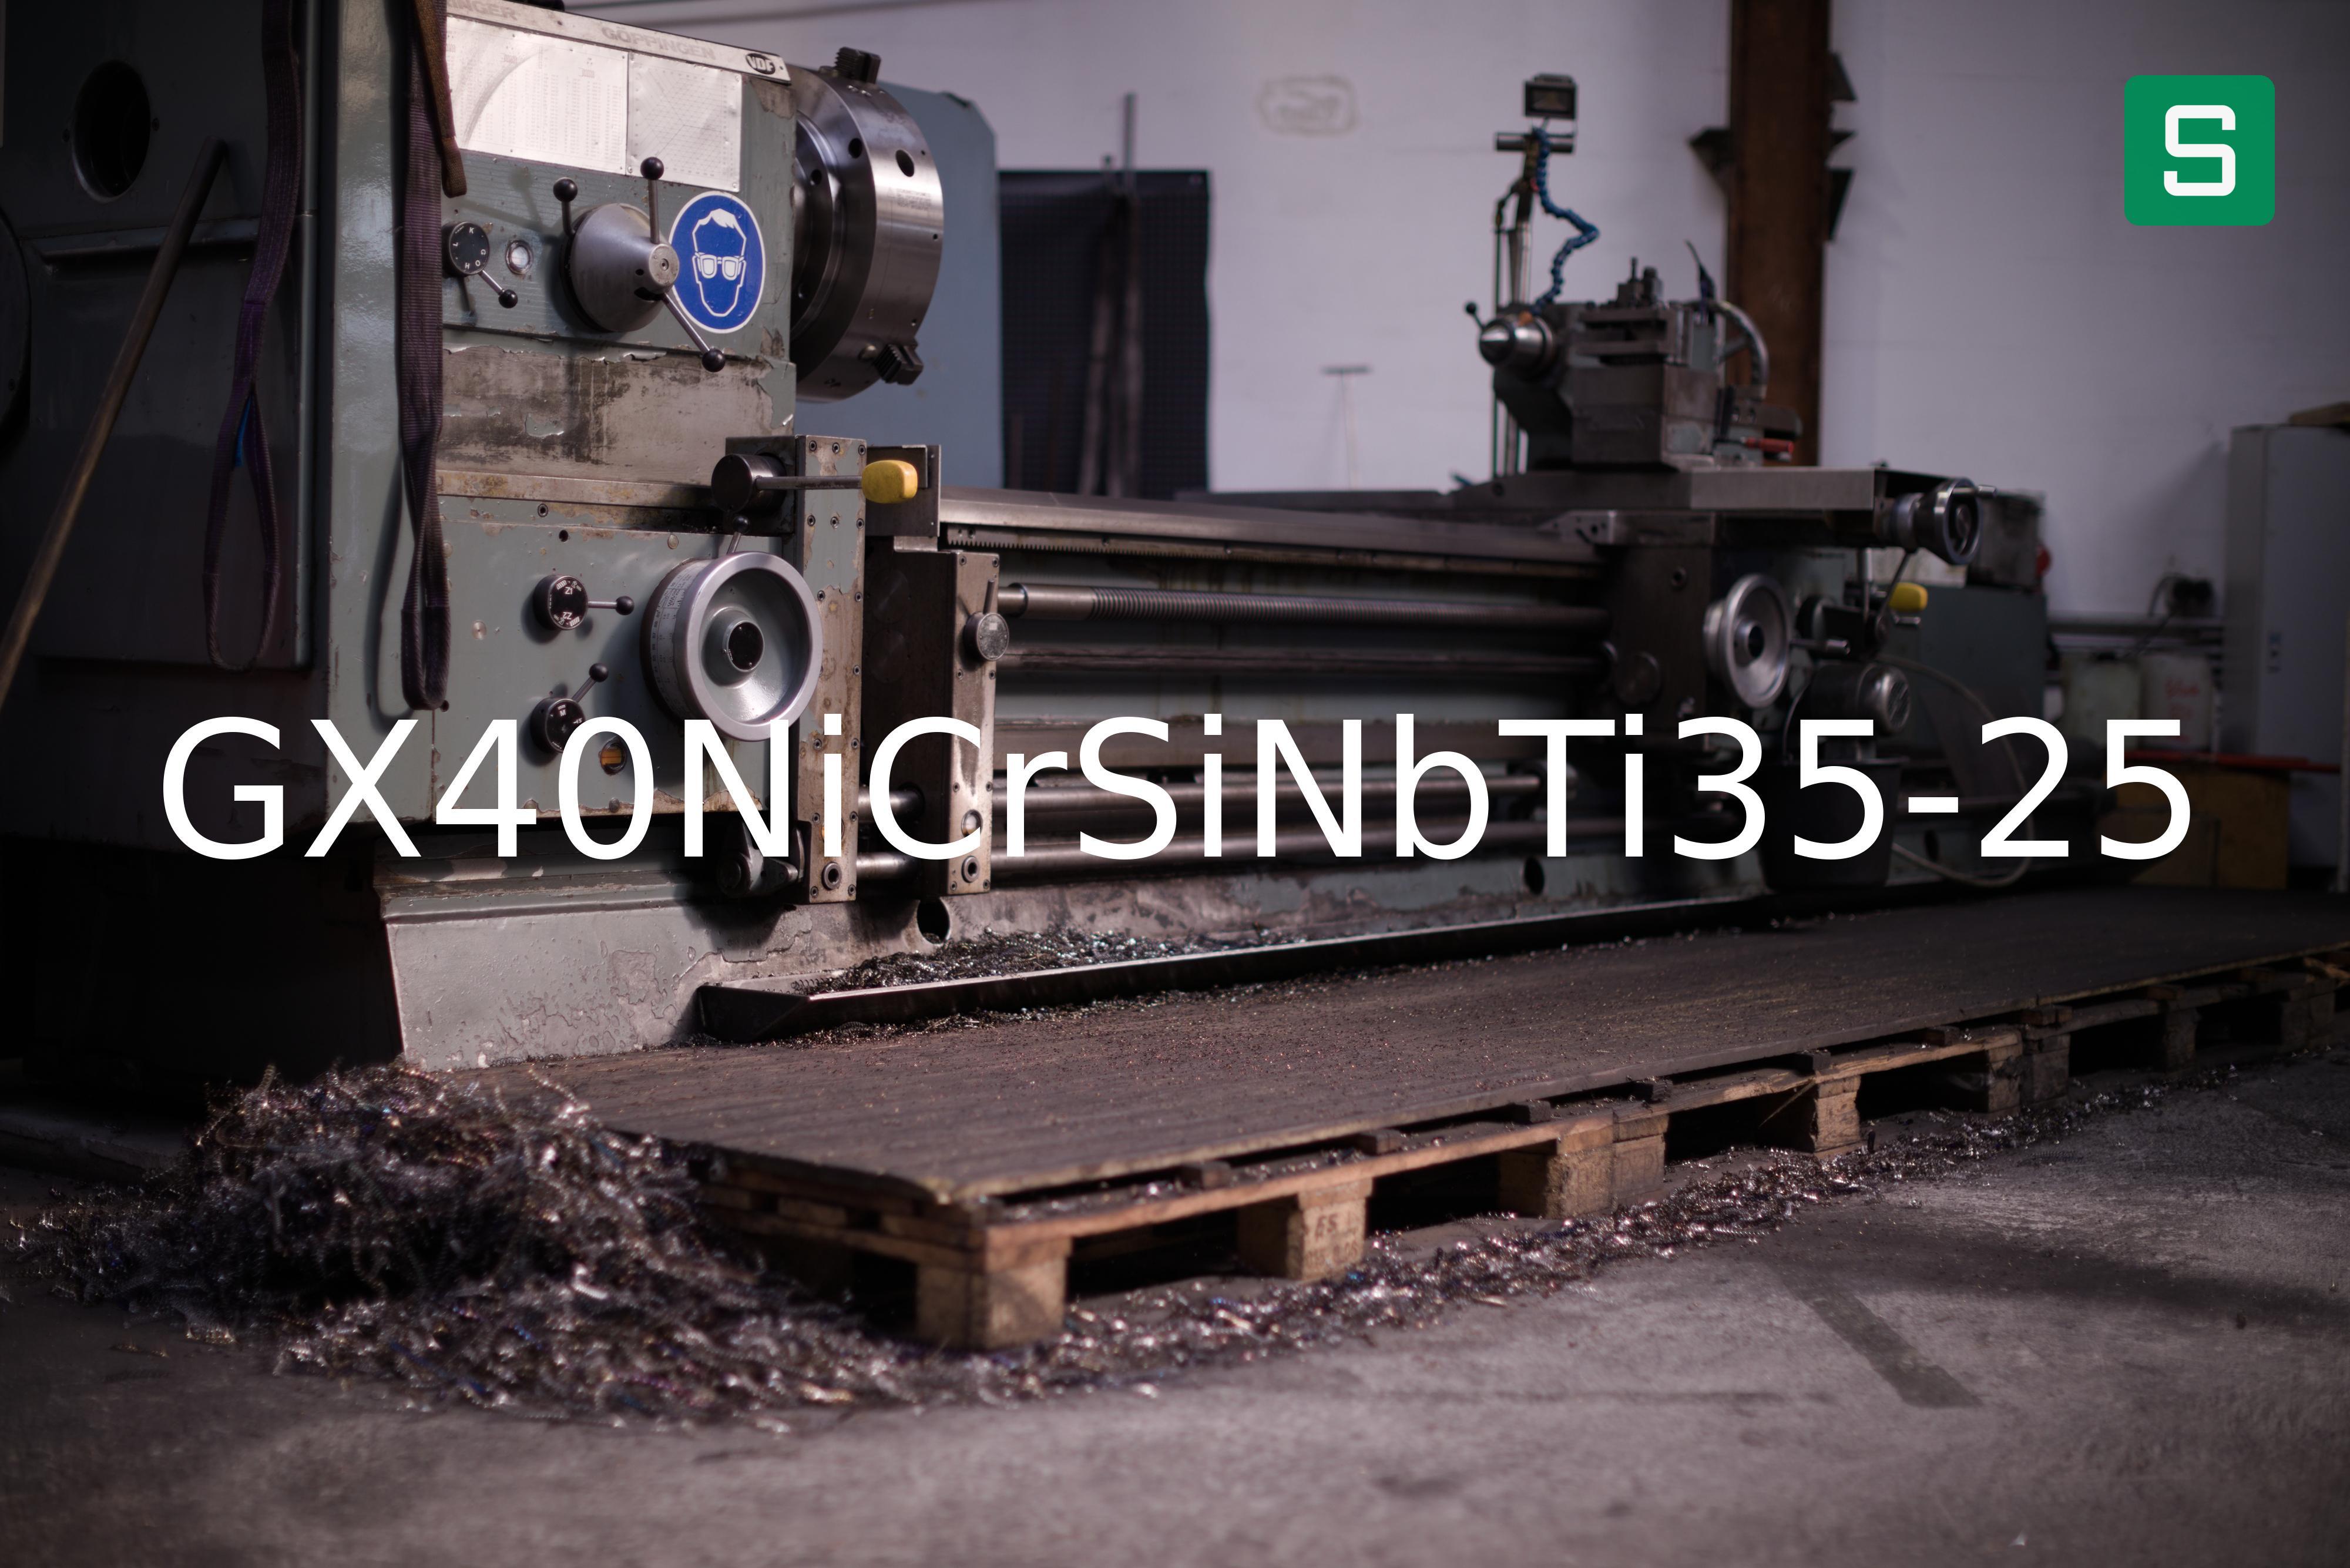 Steel Material: GX40NiCrSiNbTi35-25